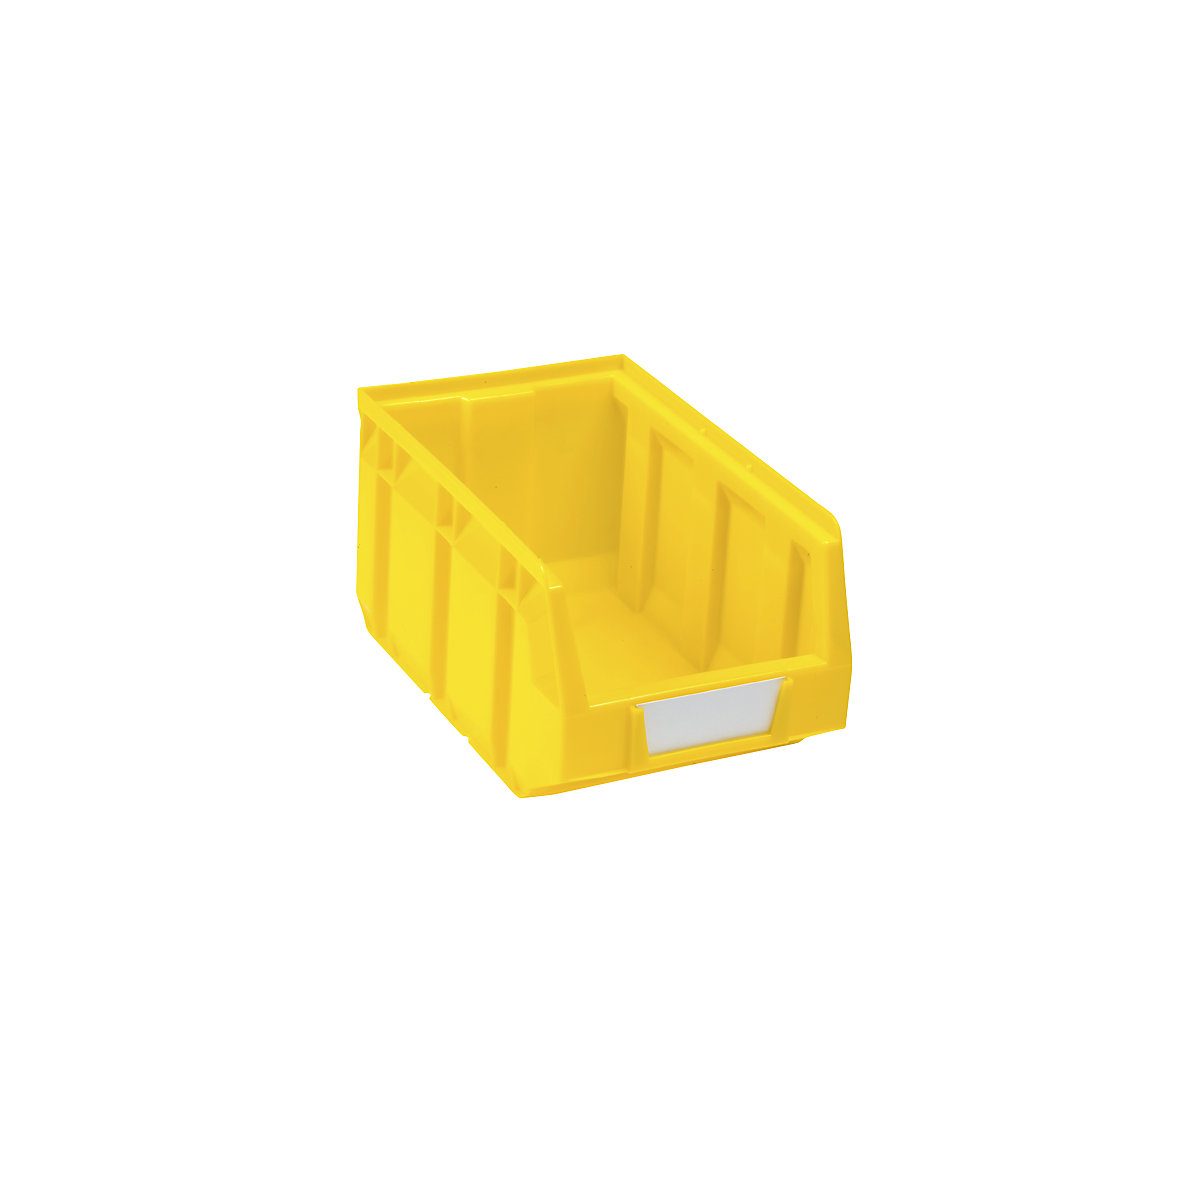 Sichtlagerkasten aus Polyethylen, LxBxH 237 x 144 x 123 mm, gelb, VE 38 Stk-8